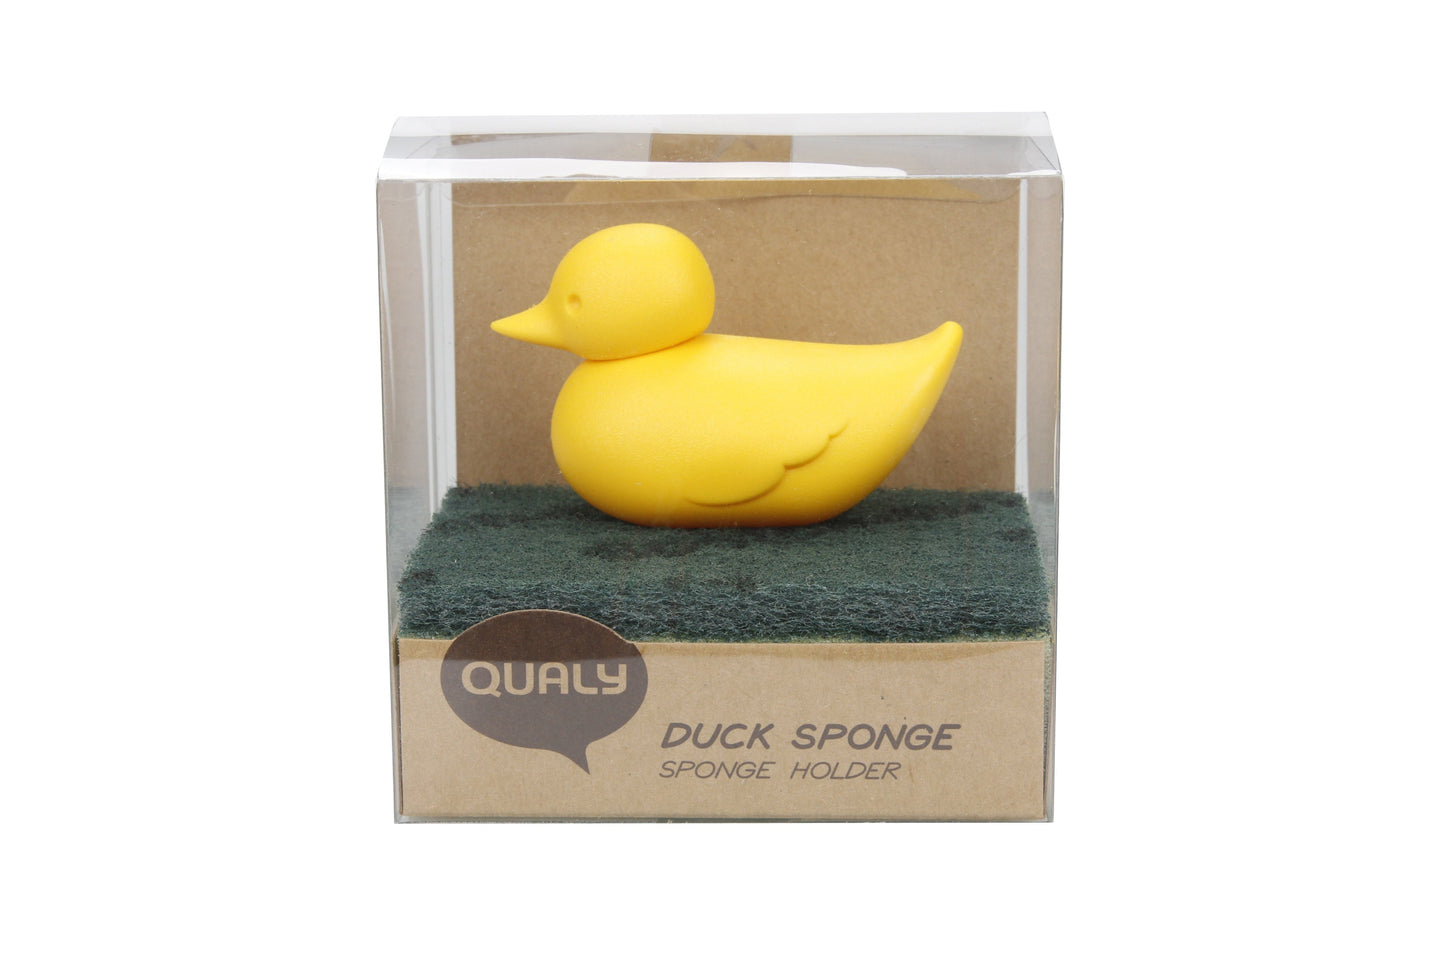 Duck sponge door